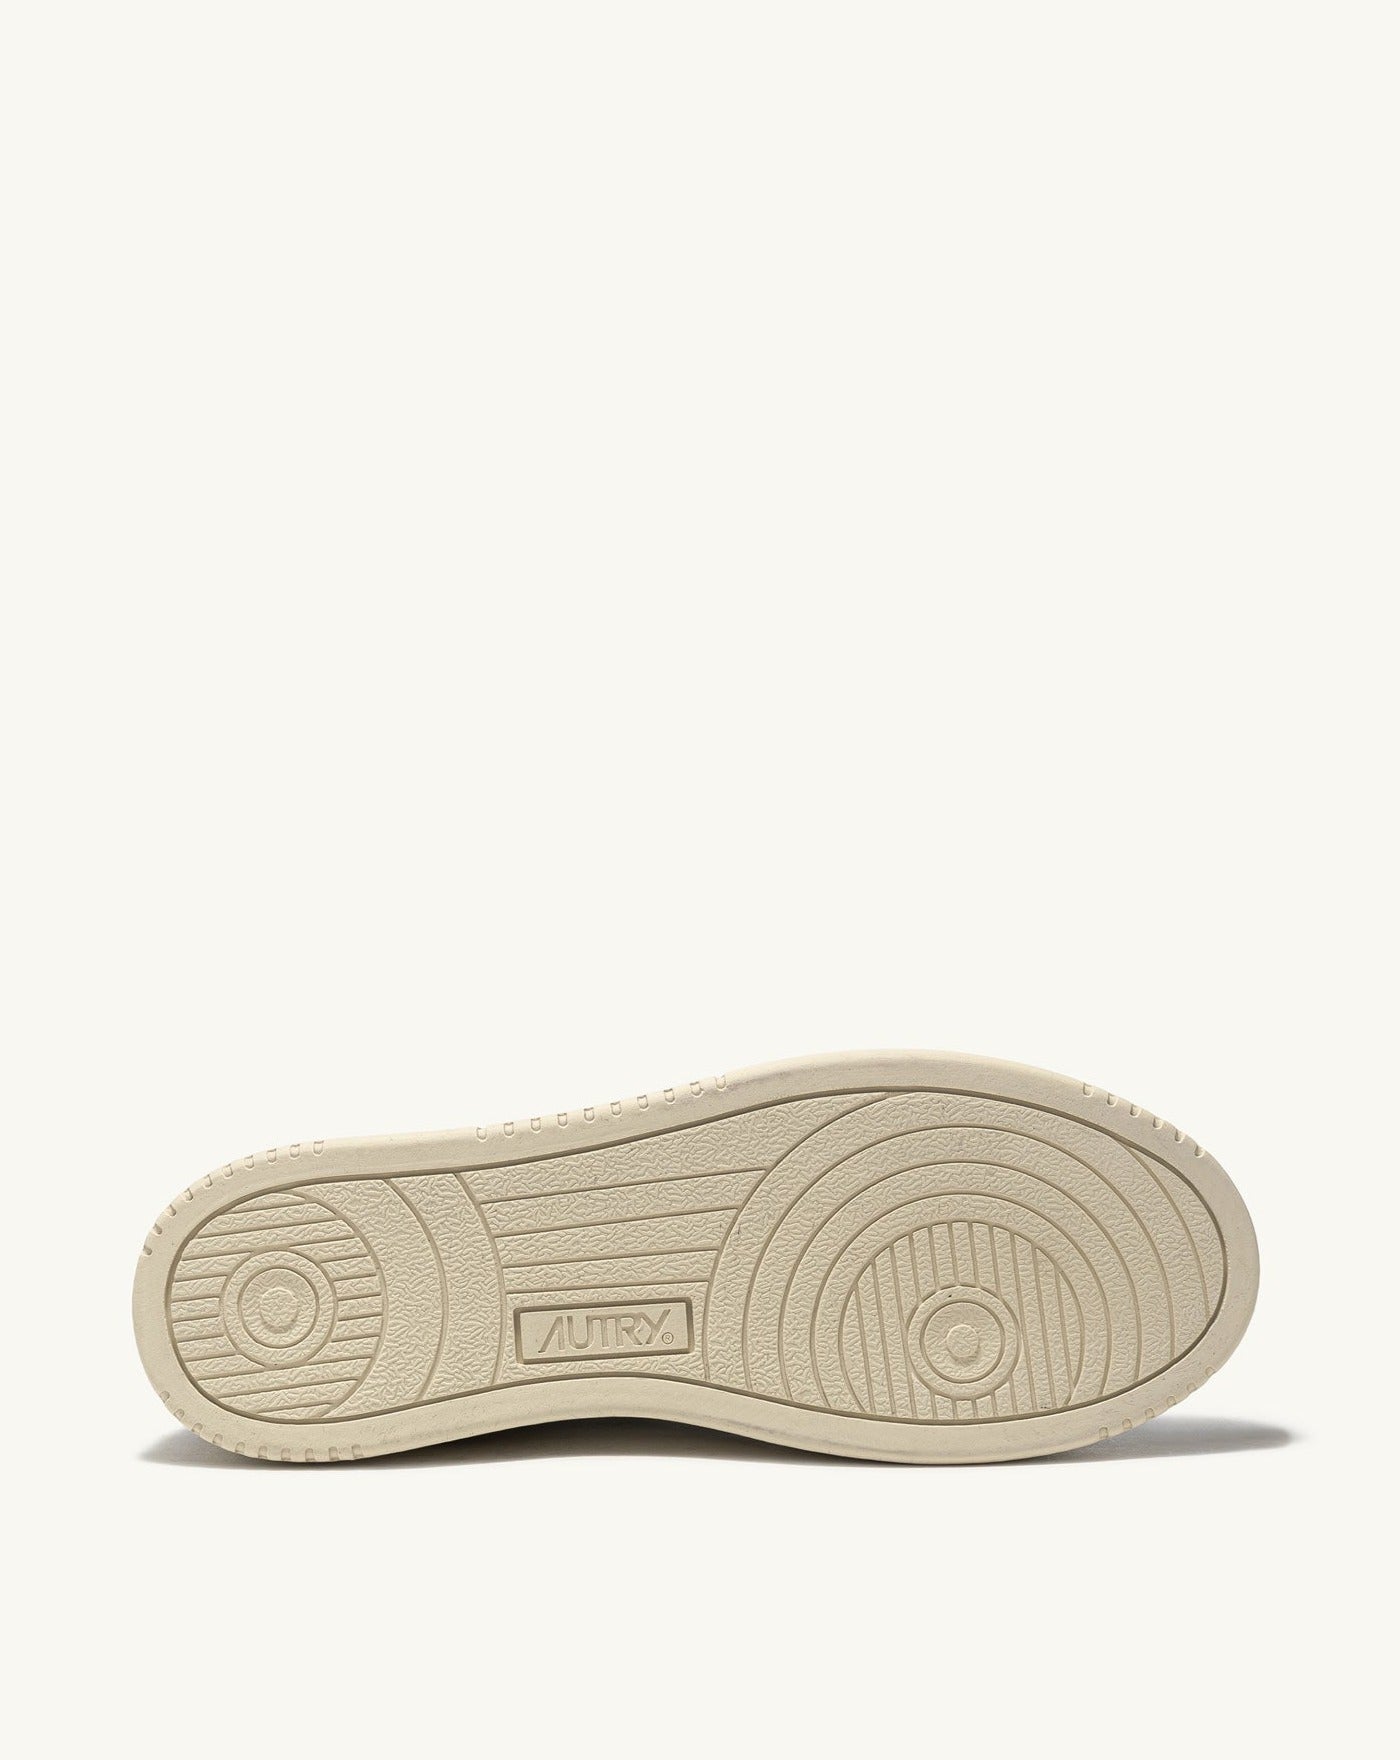 Autry LS23 White Amazon sneakers